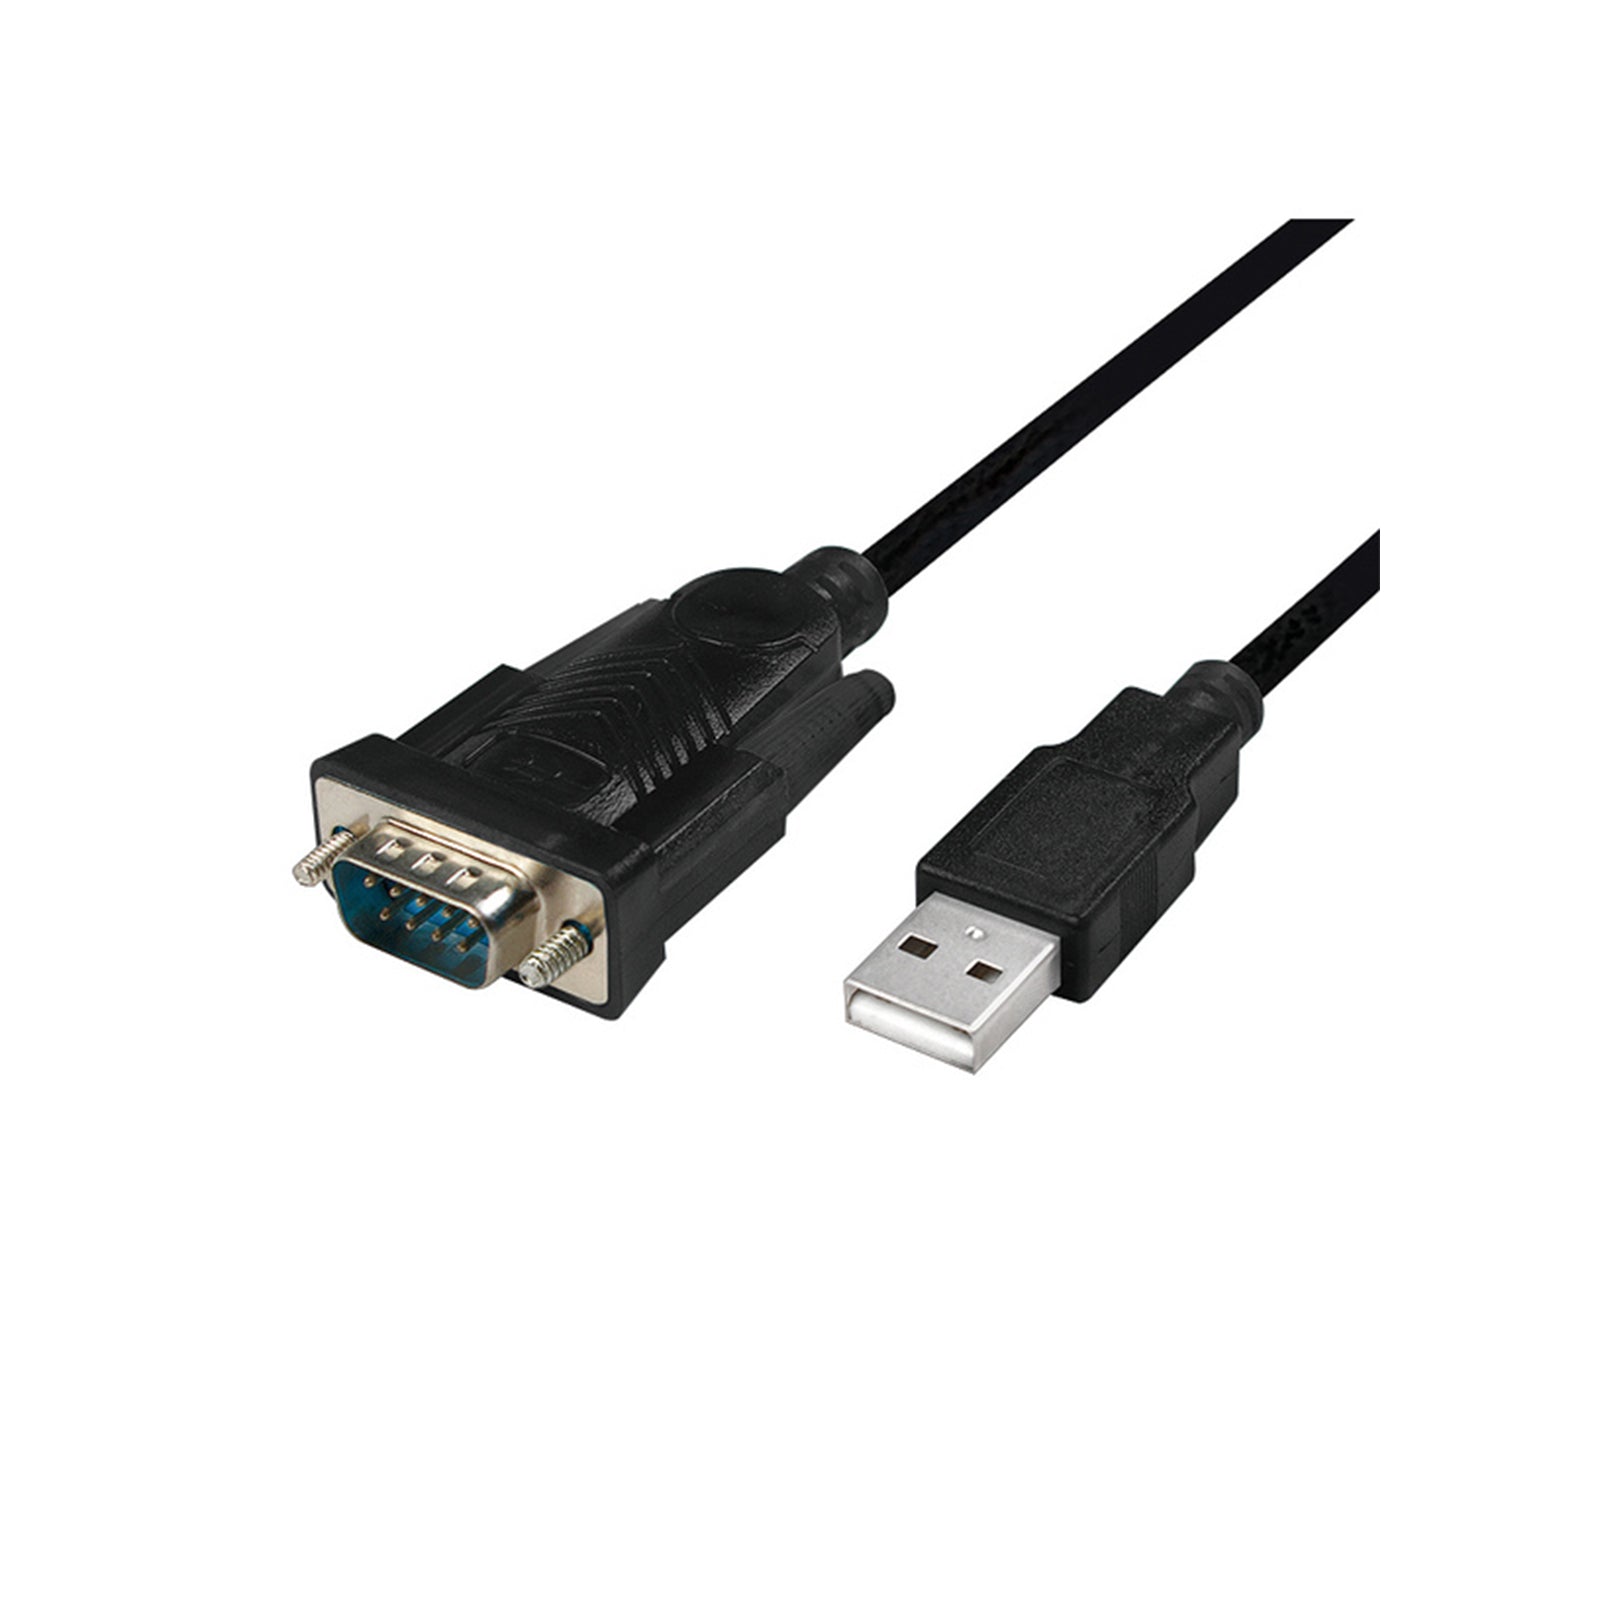 Cablexpert - Câble convertisseur USB vers DB9 (série RS232)